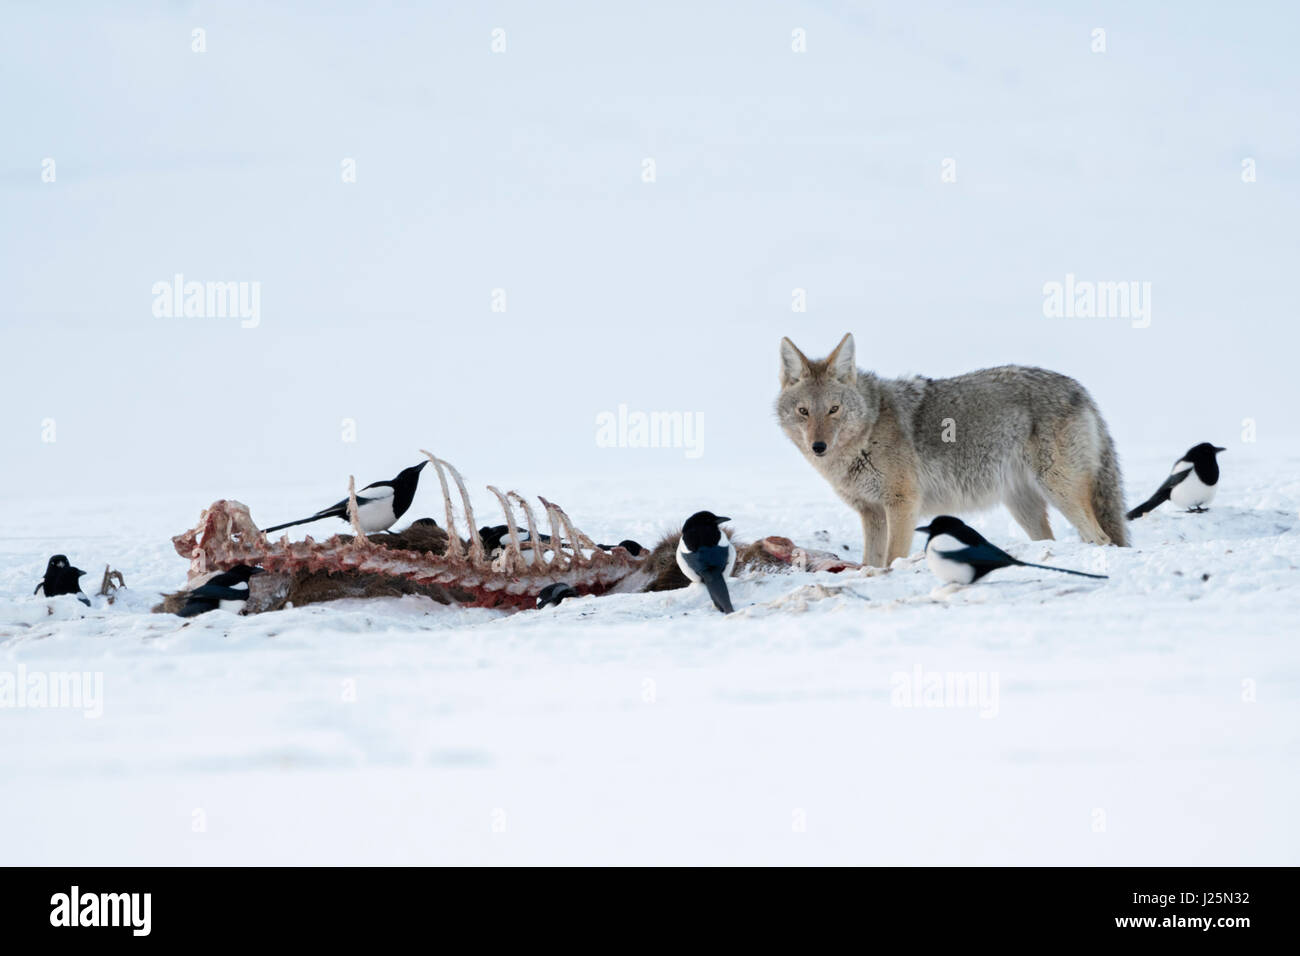 ( Kojote / Coyote Canis latrans ) en hiver, debout à côté d'une carcasse, probablement un loup tuer, de concert avec les pies en haute neige, Yellowstone NP, USA Banque D'Images